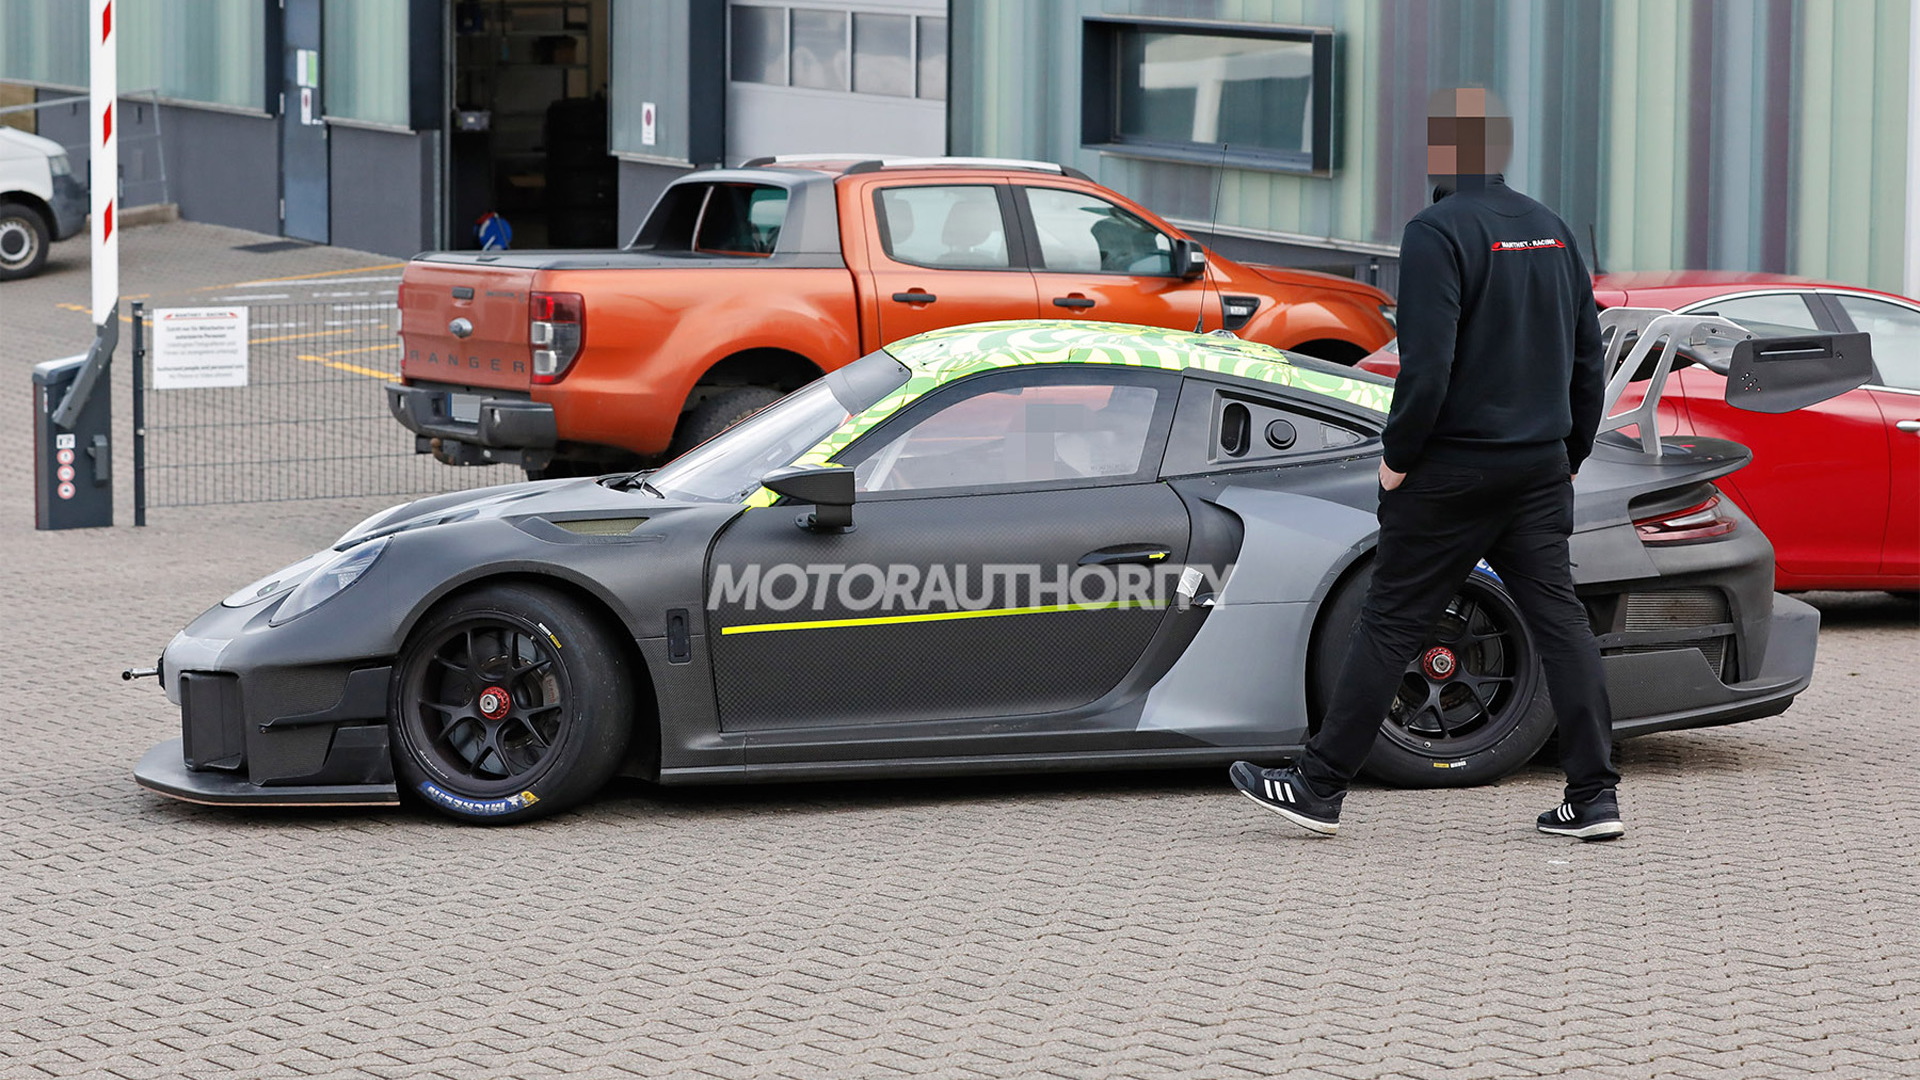 2022 Porsche 911 GT2 RS Clubsport 25 spy shots - Photo credit: S. Baldauf/SB-Medien